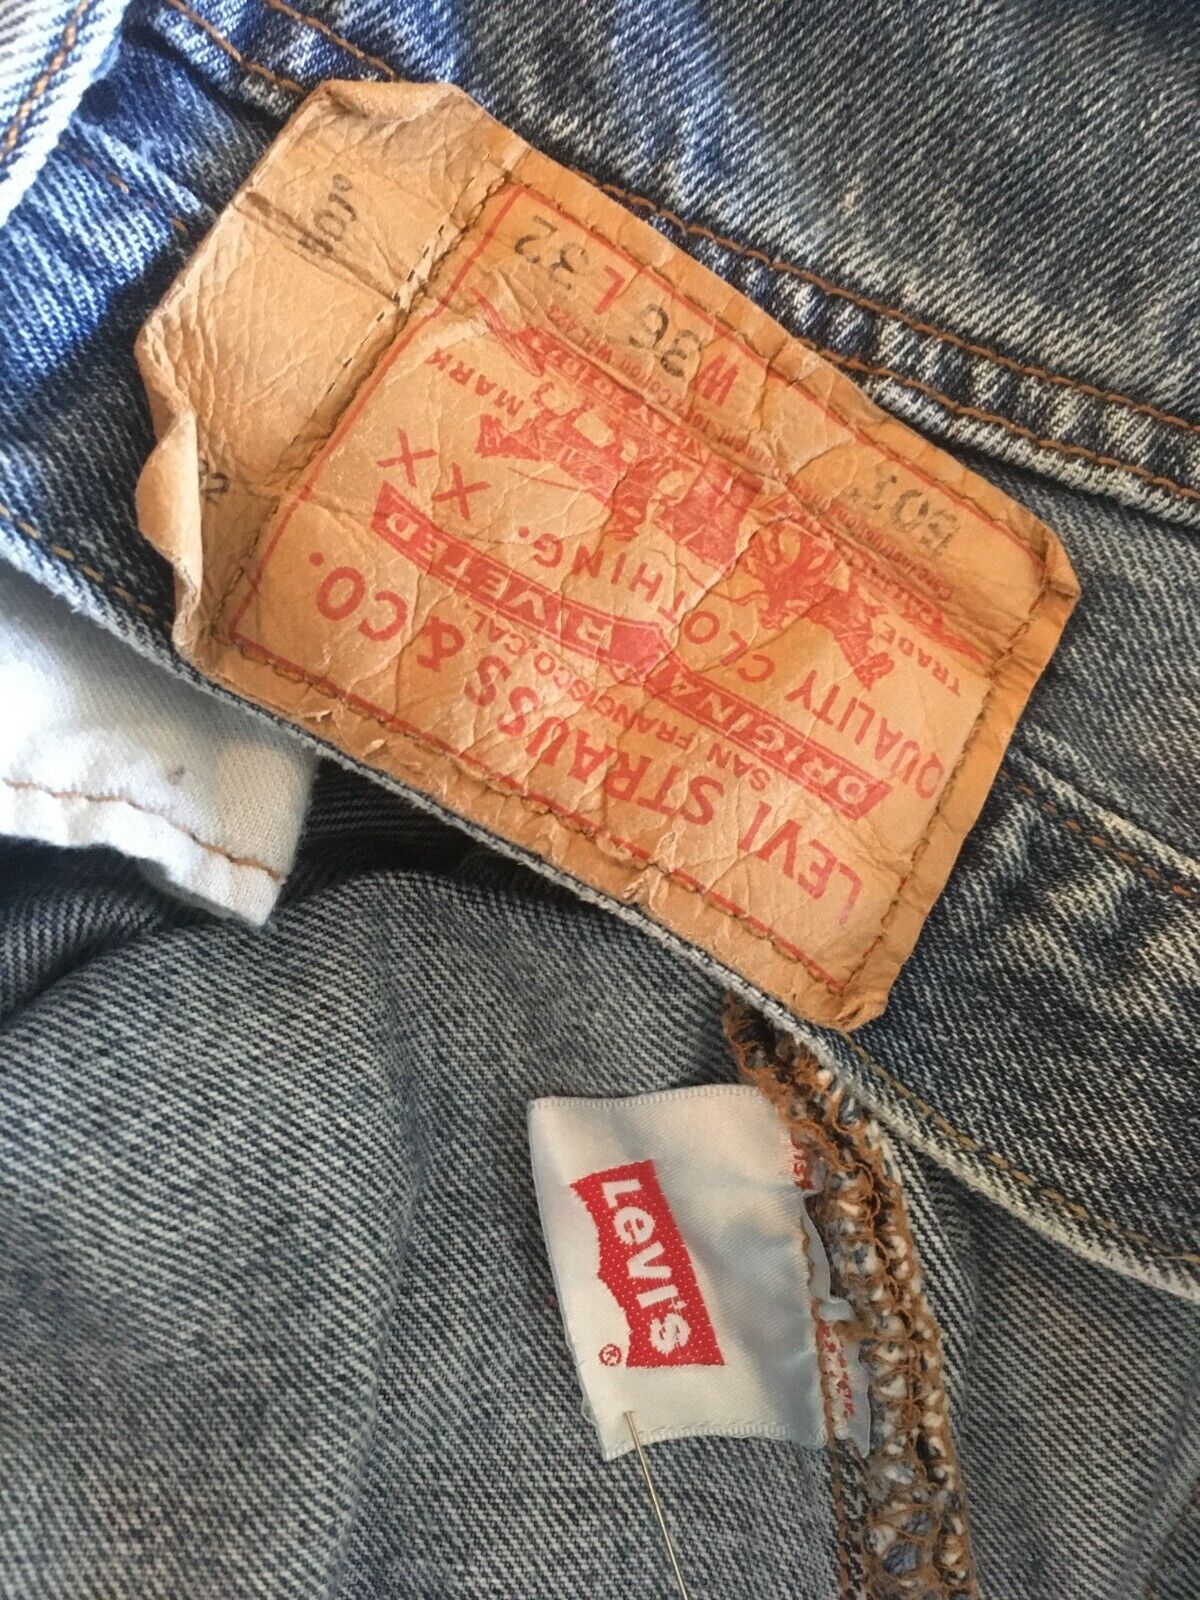 Vintage Levi's 501 Jeans tag 36 x 32 (actual 36 x 30.5)